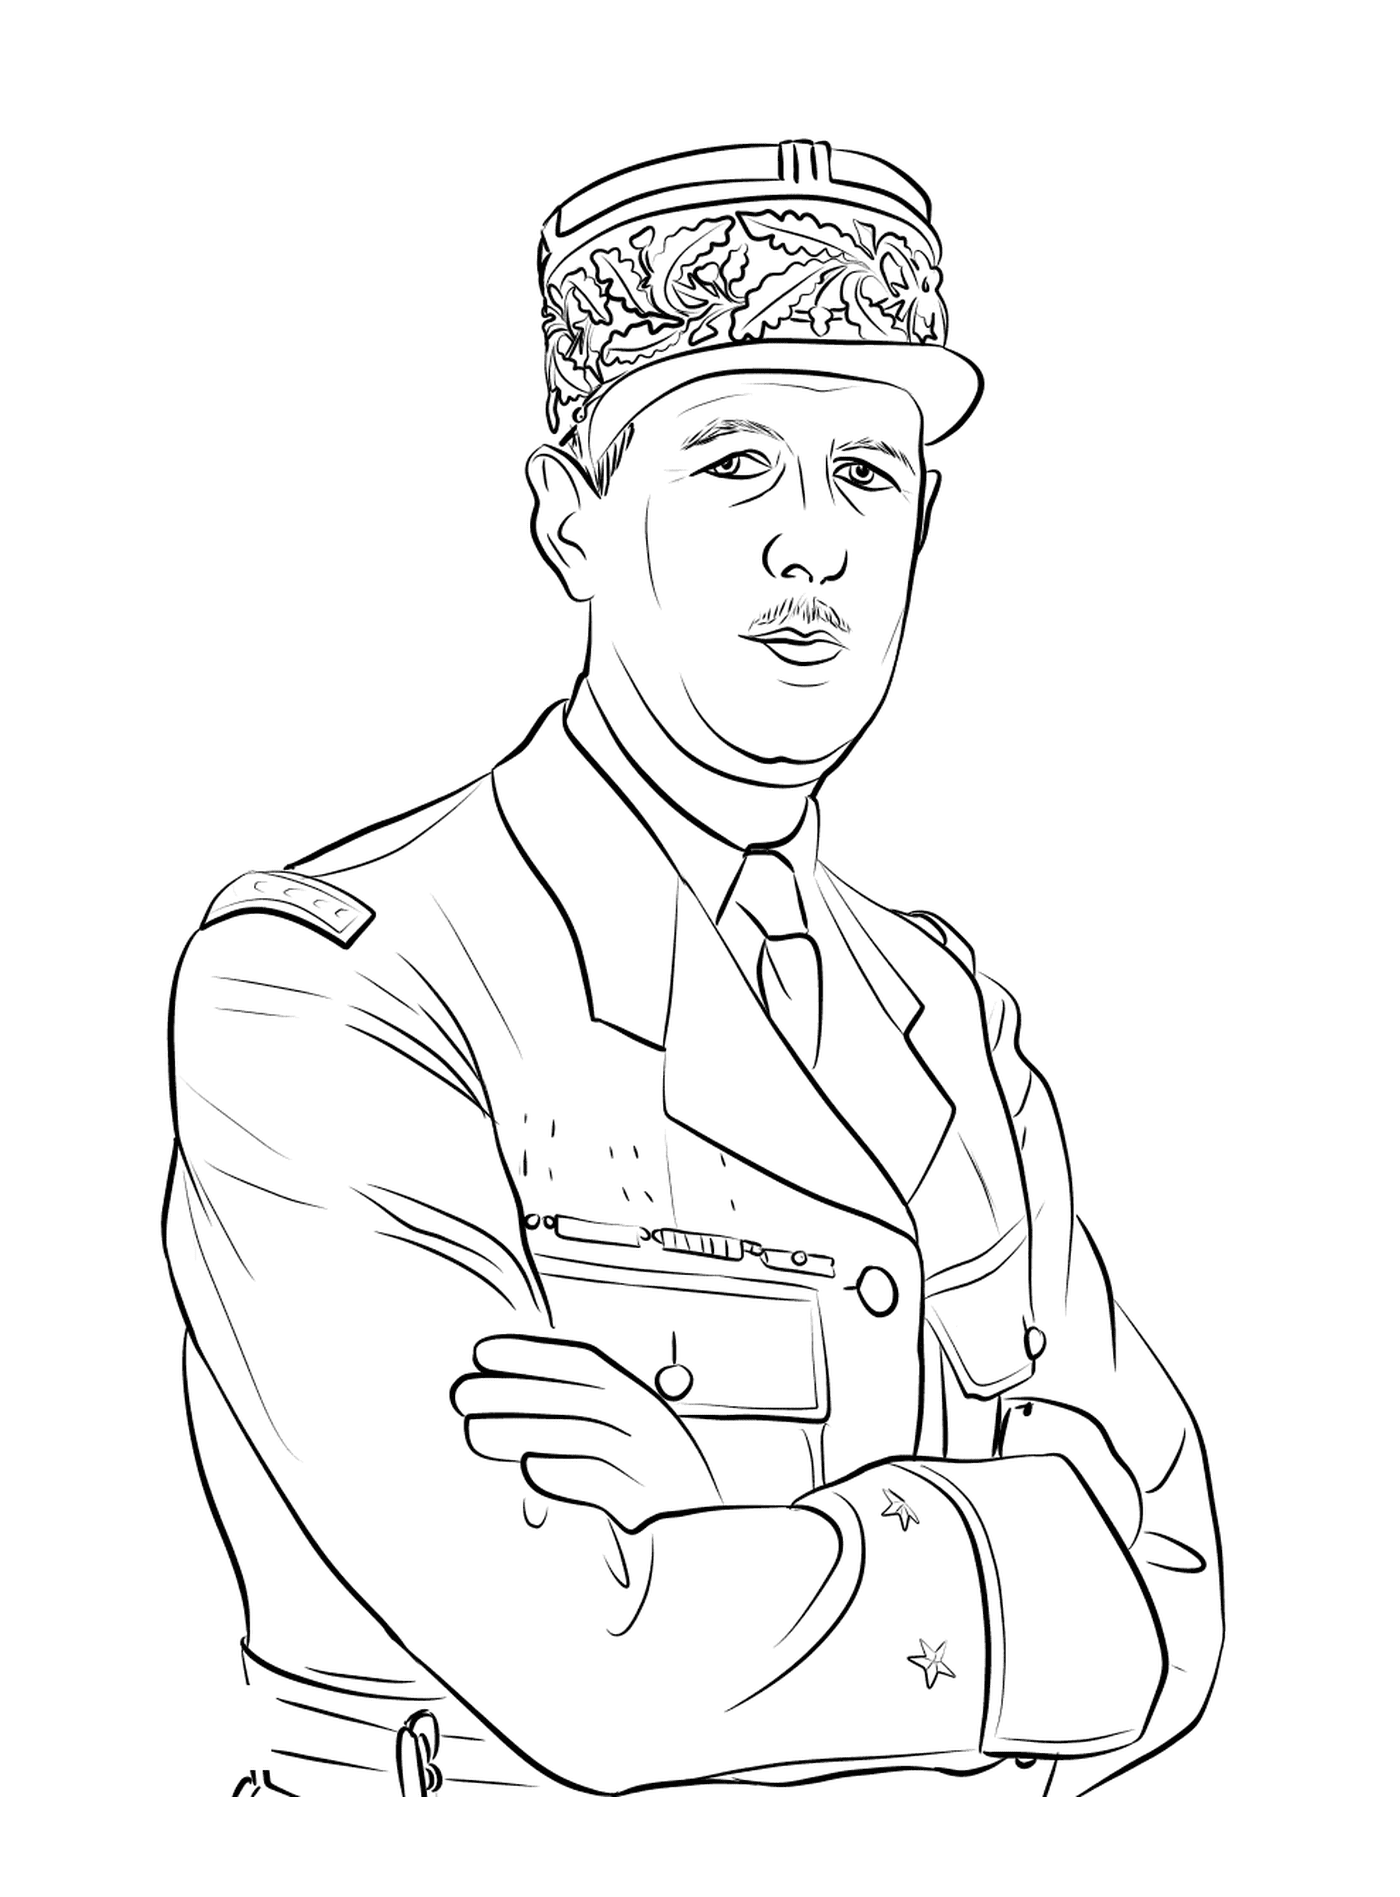  Charles de Gaulle, capo militare 